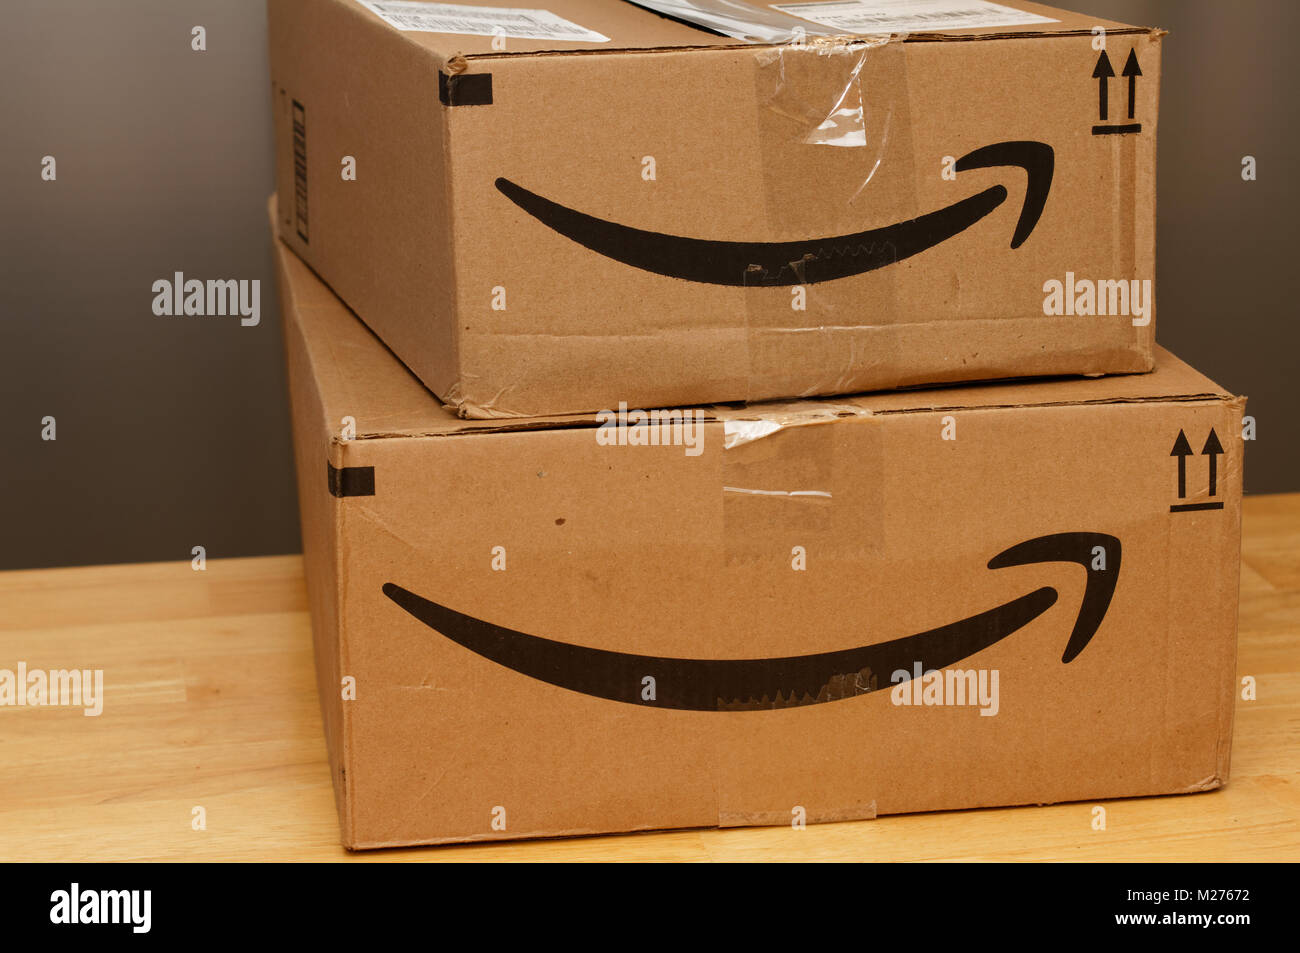 Quebec,Canada.Amazon shipping boxes Stock Photo